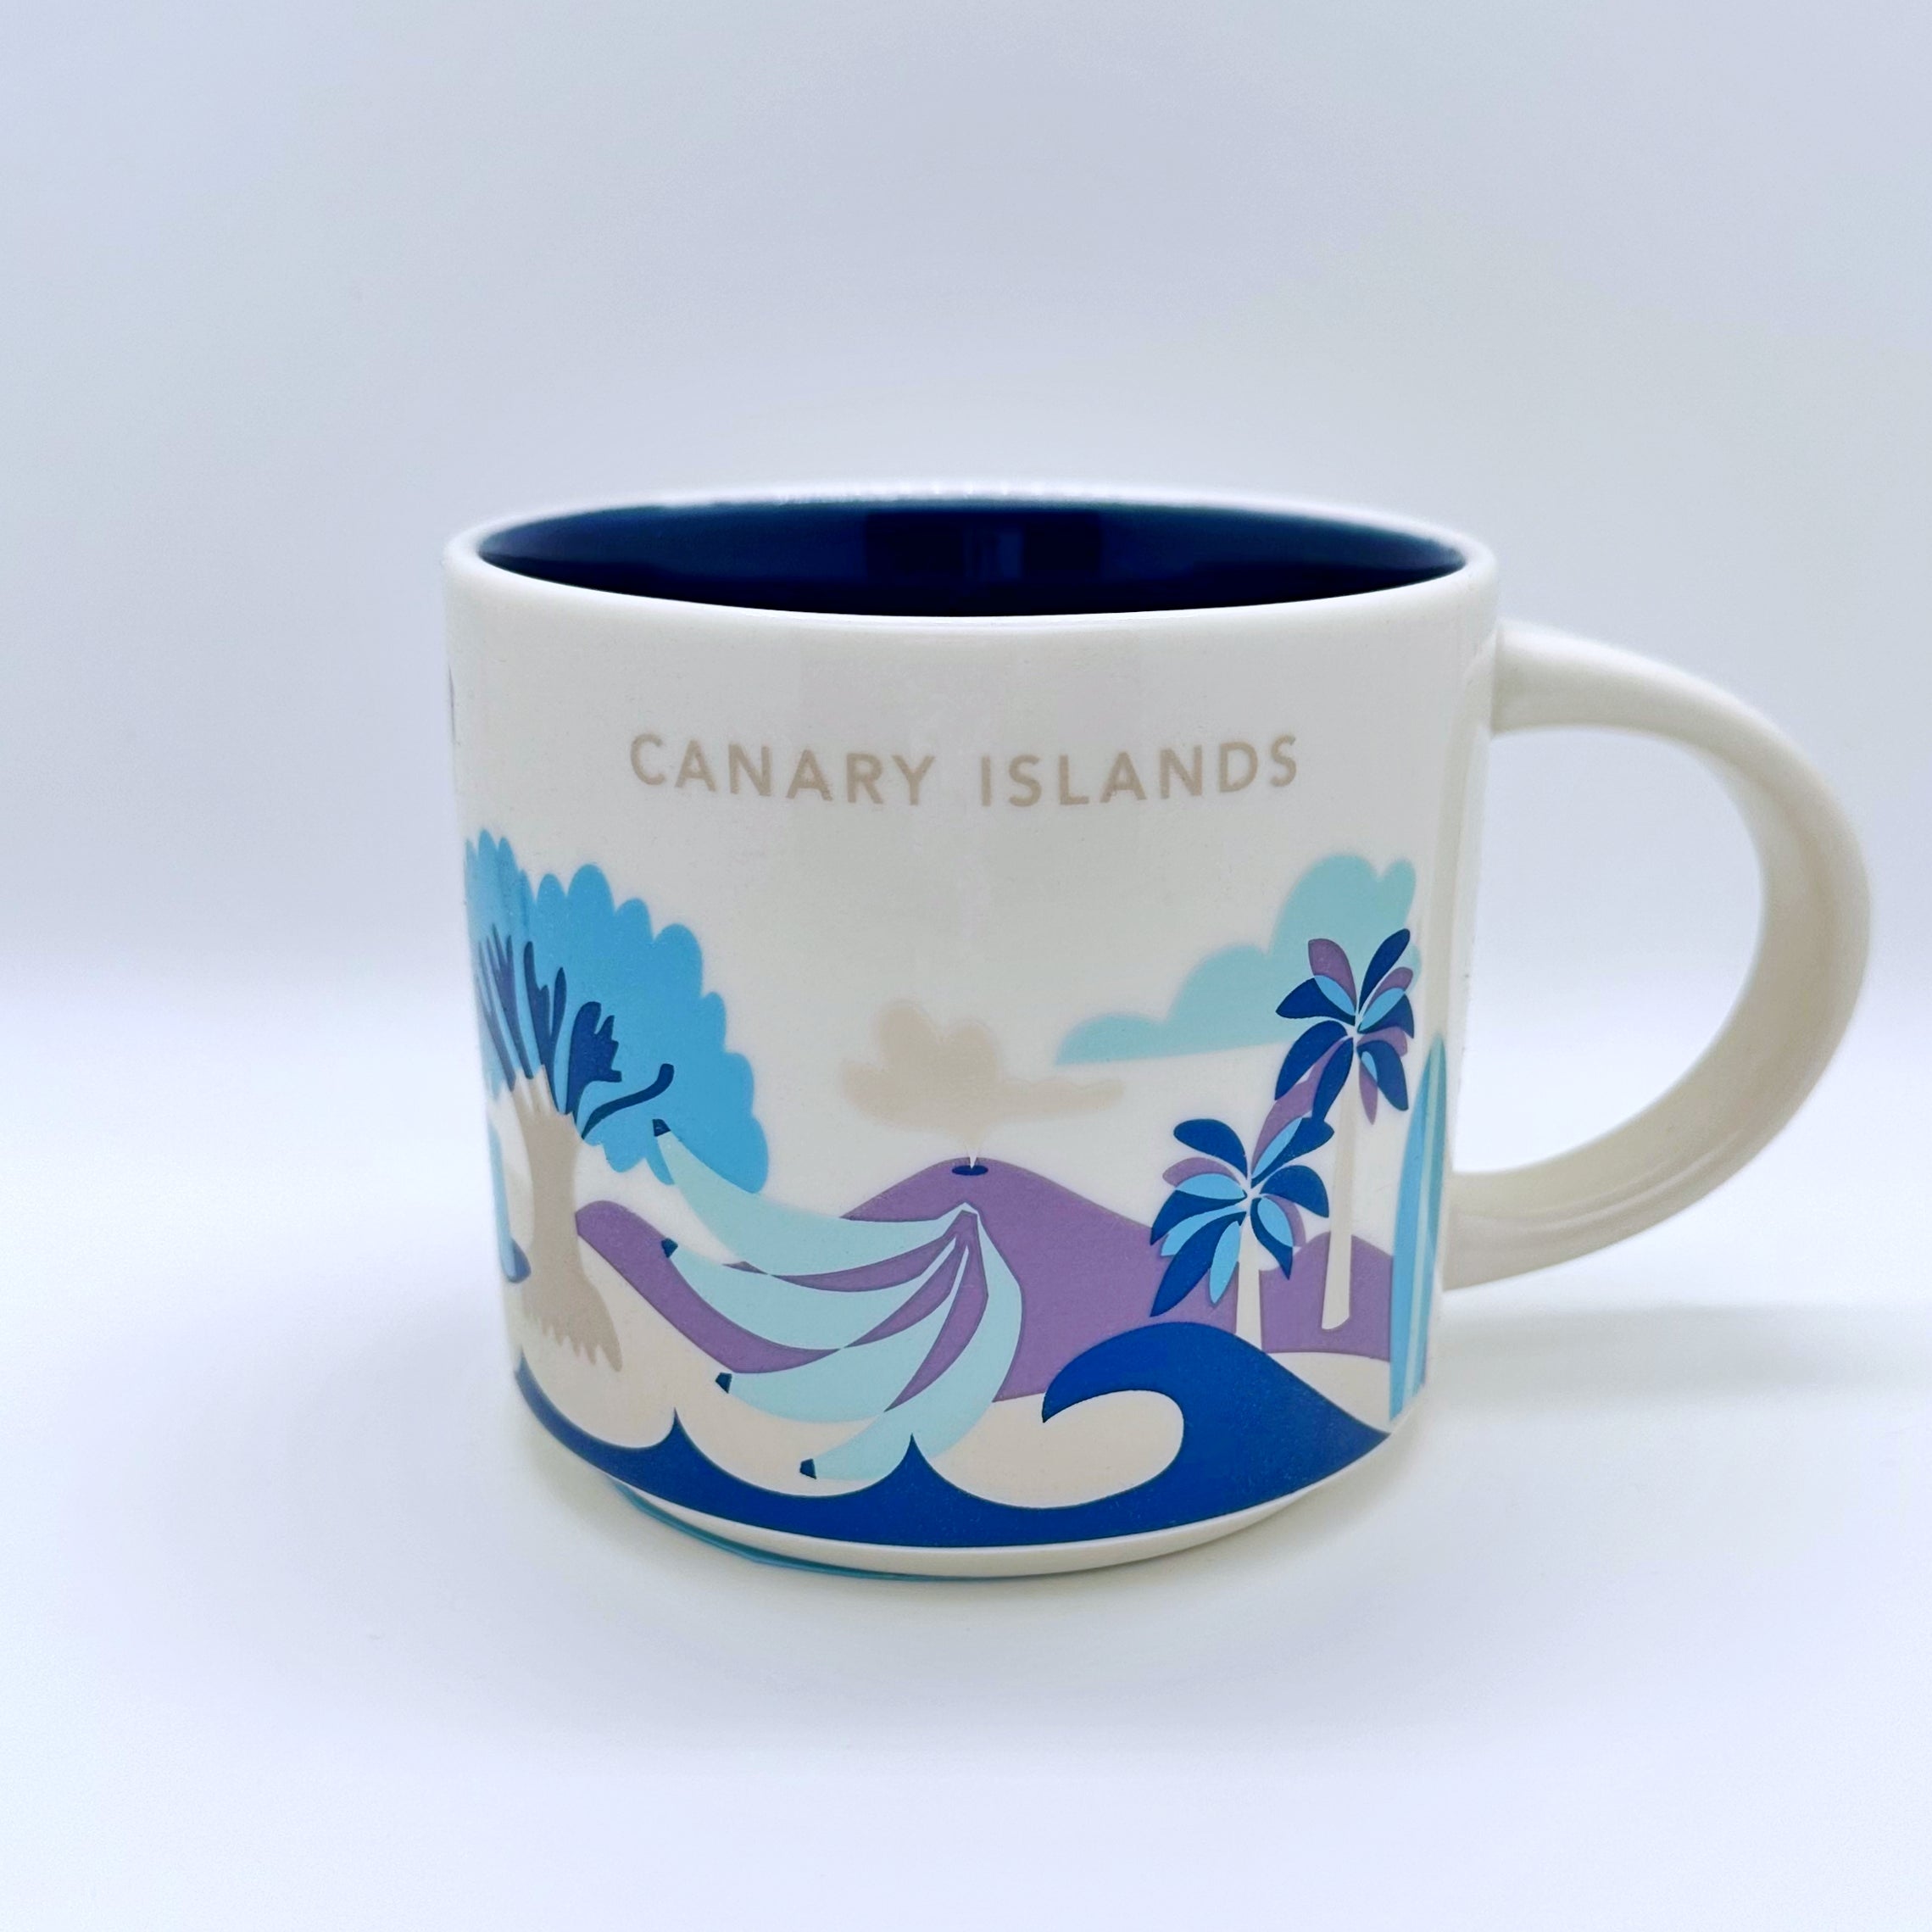 Kaffee Tee und Cappuccino Tasse von Starbucks mit gemalten Bildern von den Kanarische Inseln